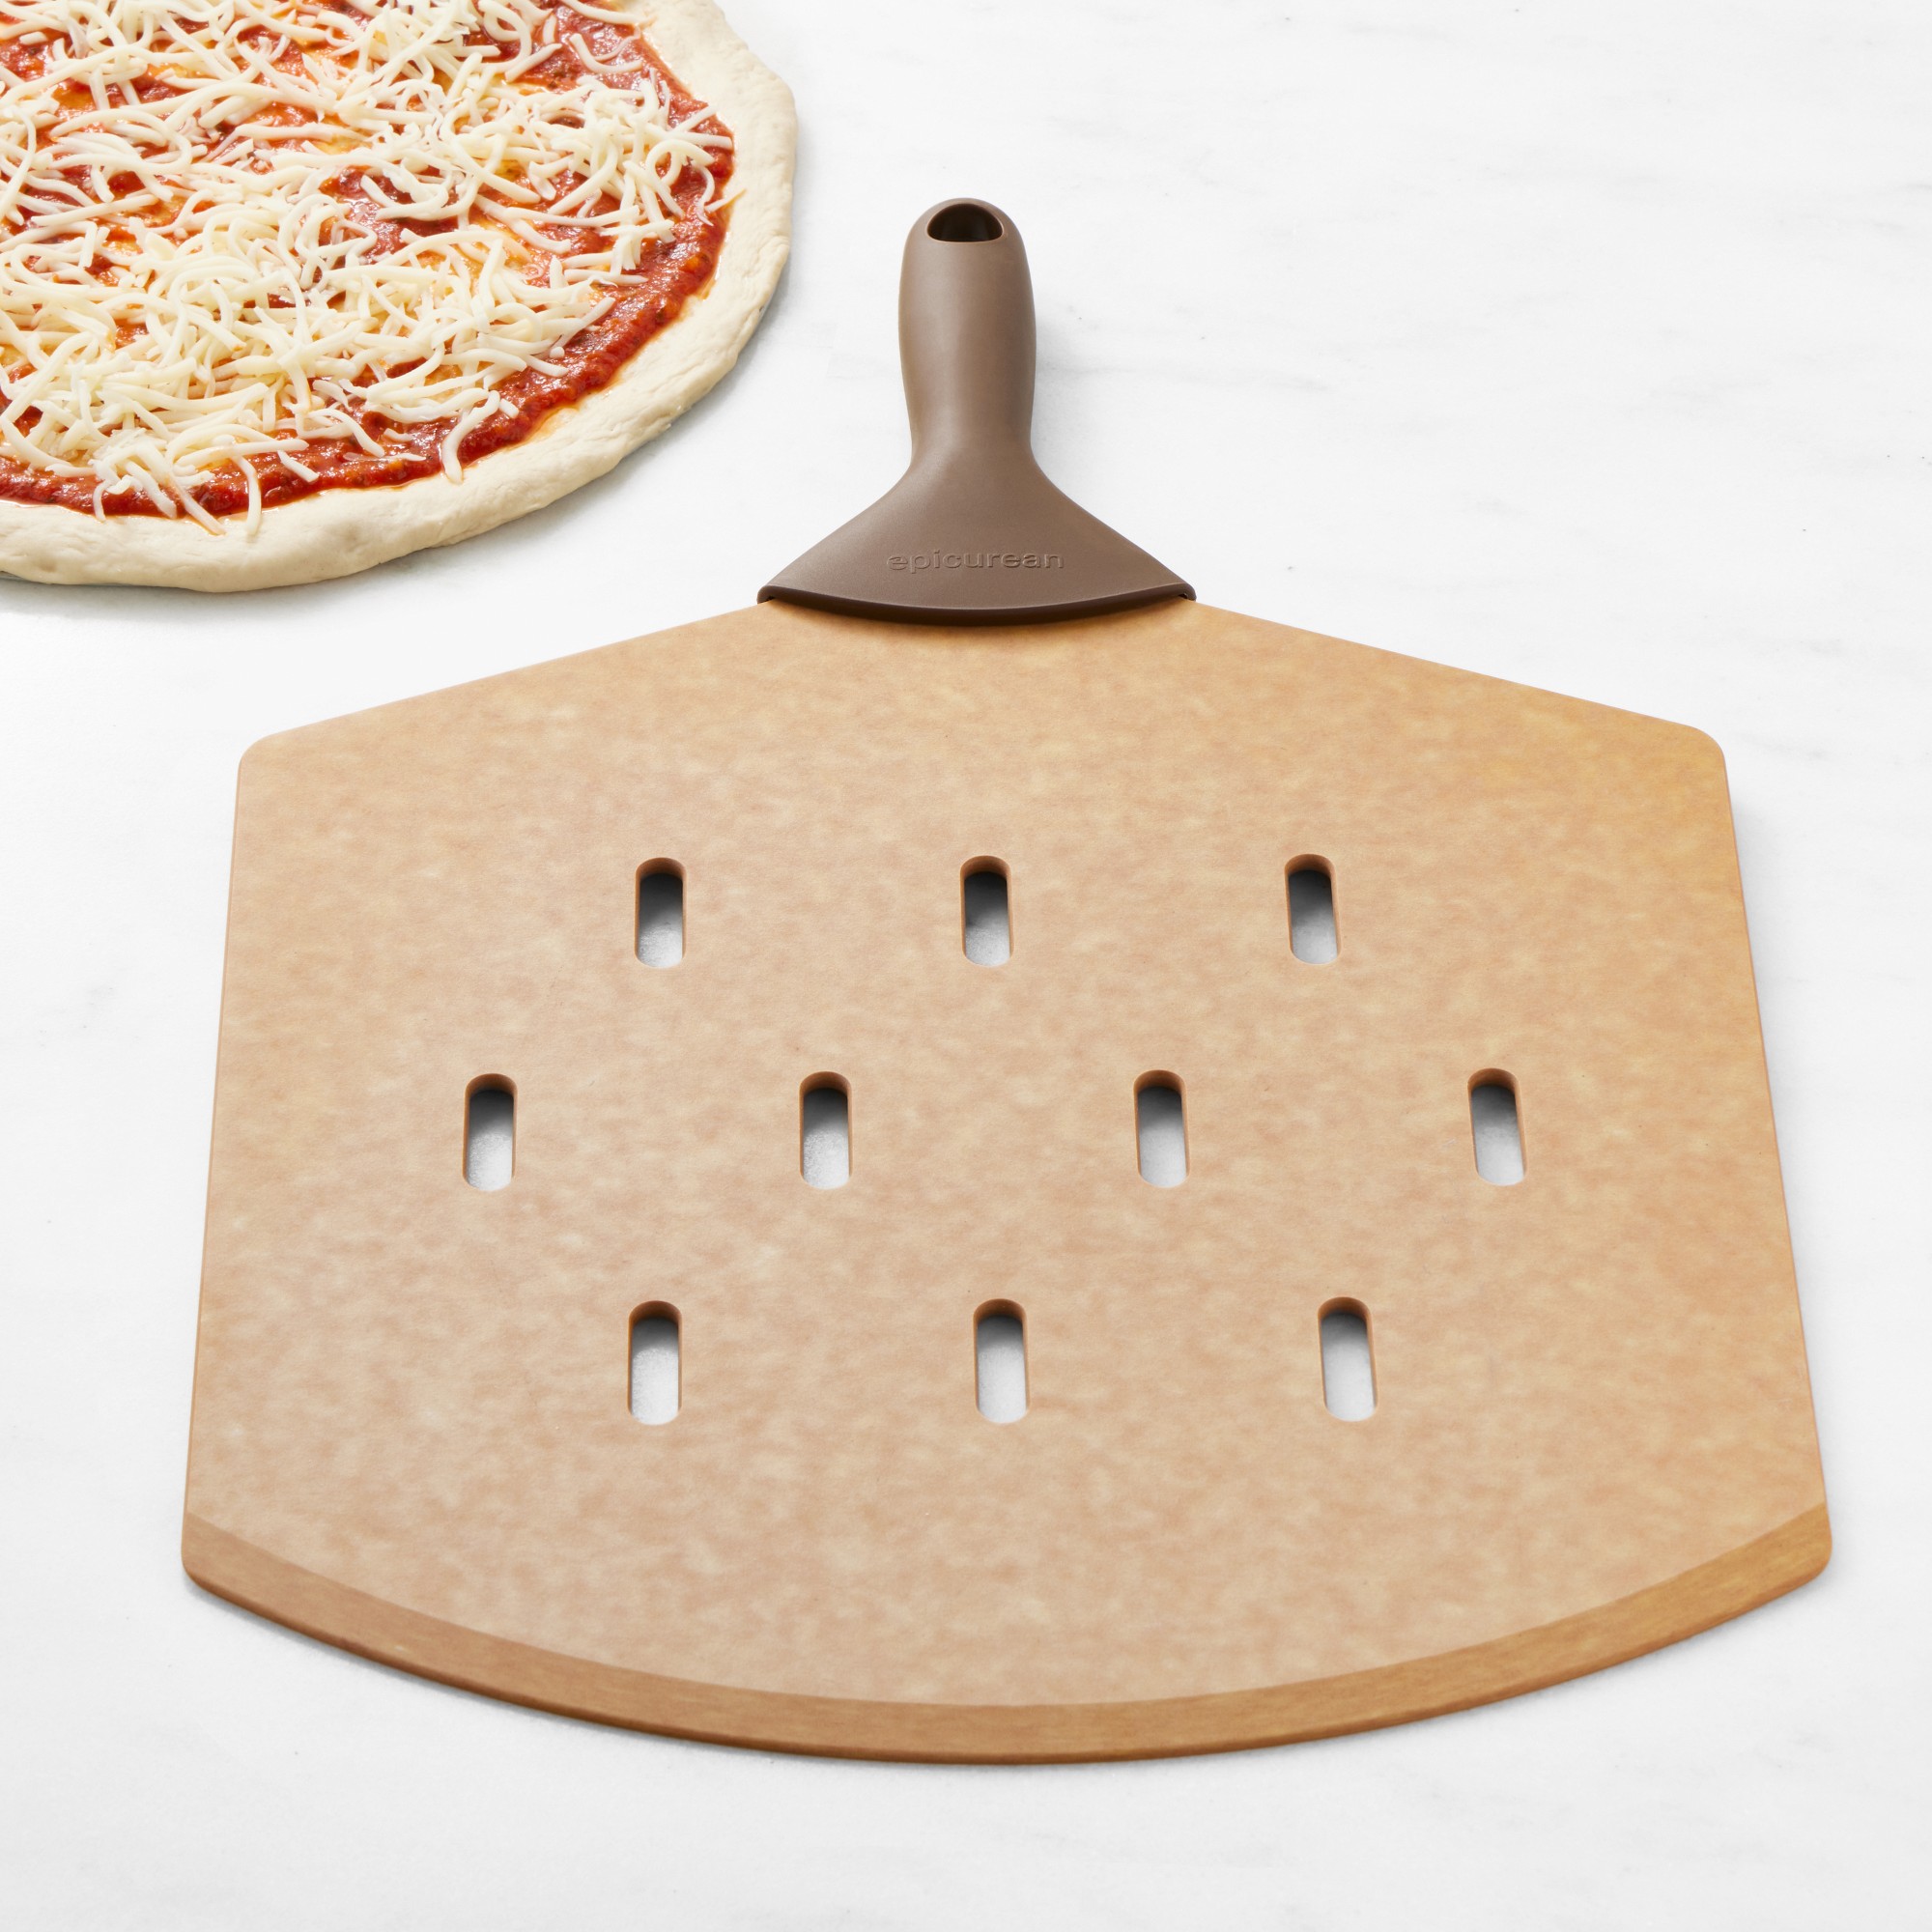 Epicurean Perforated Pizza Peel